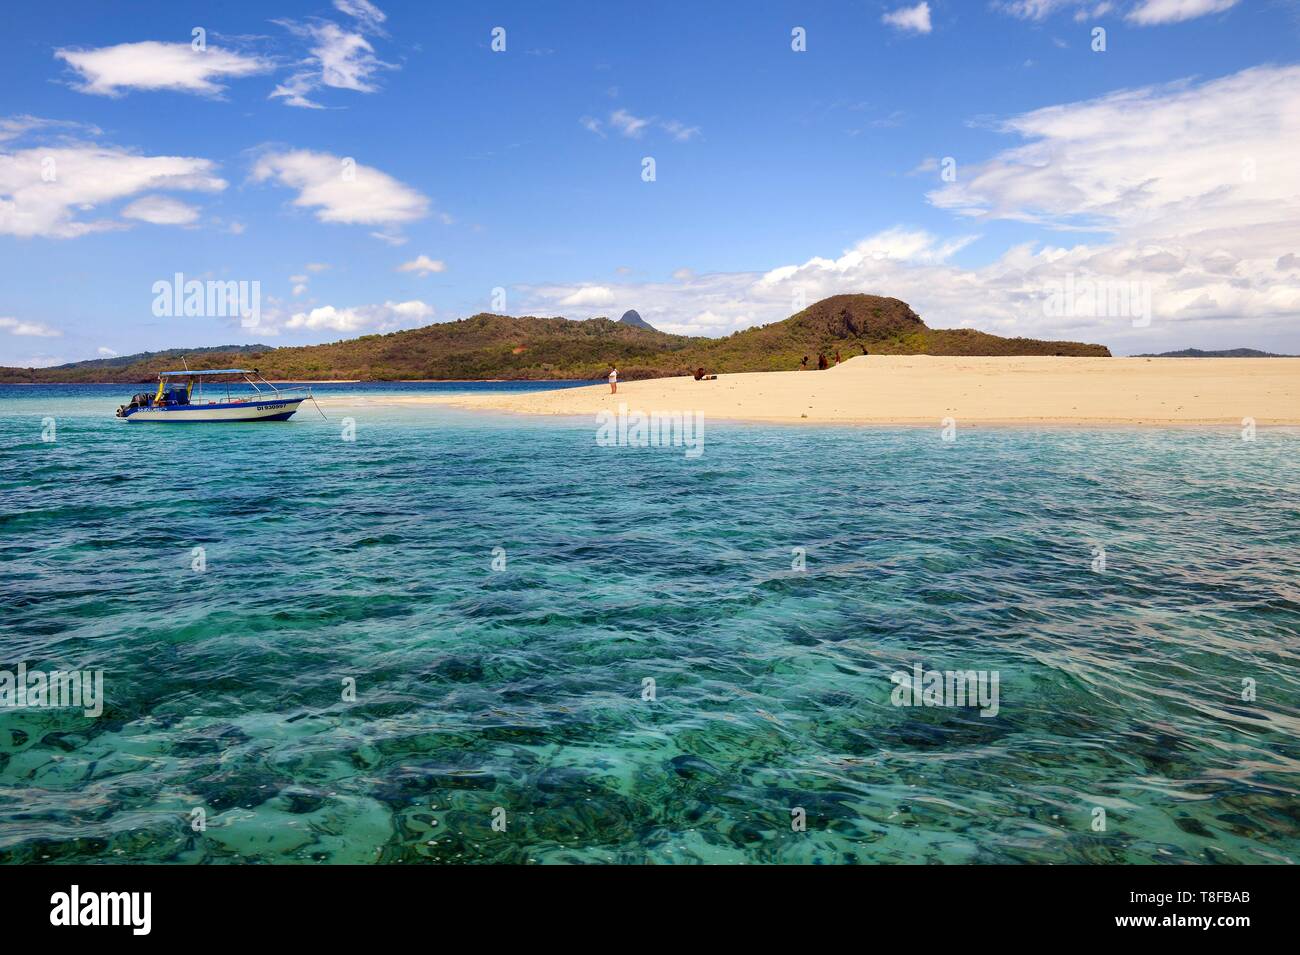 La France, l'île de Mayotte (département français d'outre-mer), la Grande Terre, M'Tsamoudou, îlot de sable blanc sur la barrière de corail dans le lagon face à Saziley Point Banque D'Images